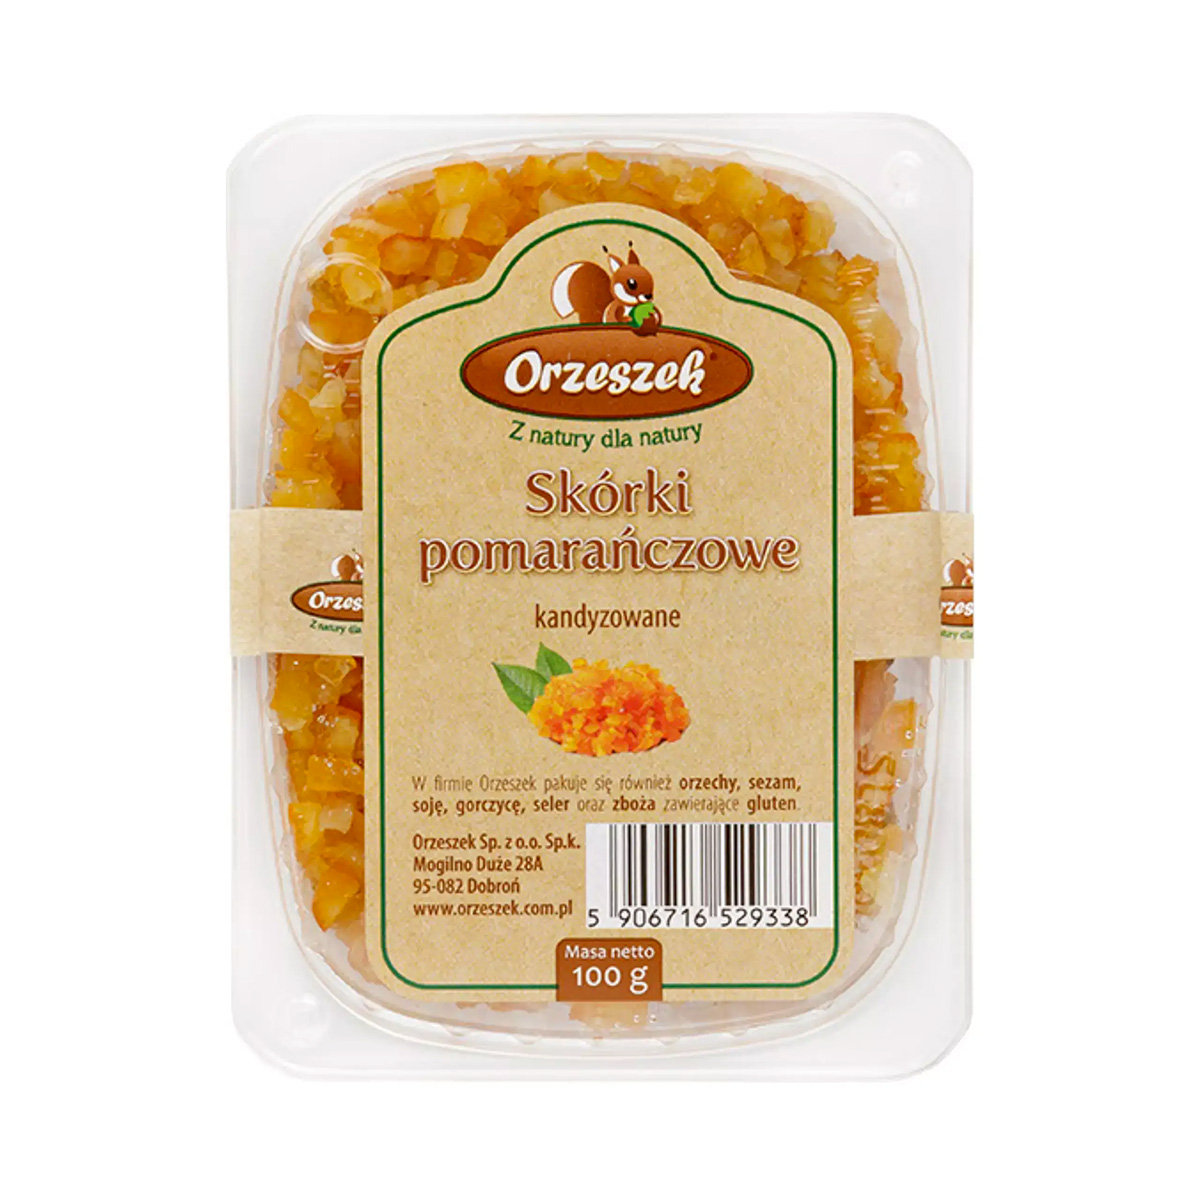 Skórki pomarańczowe kandyzowane Orzeszek - 100 g